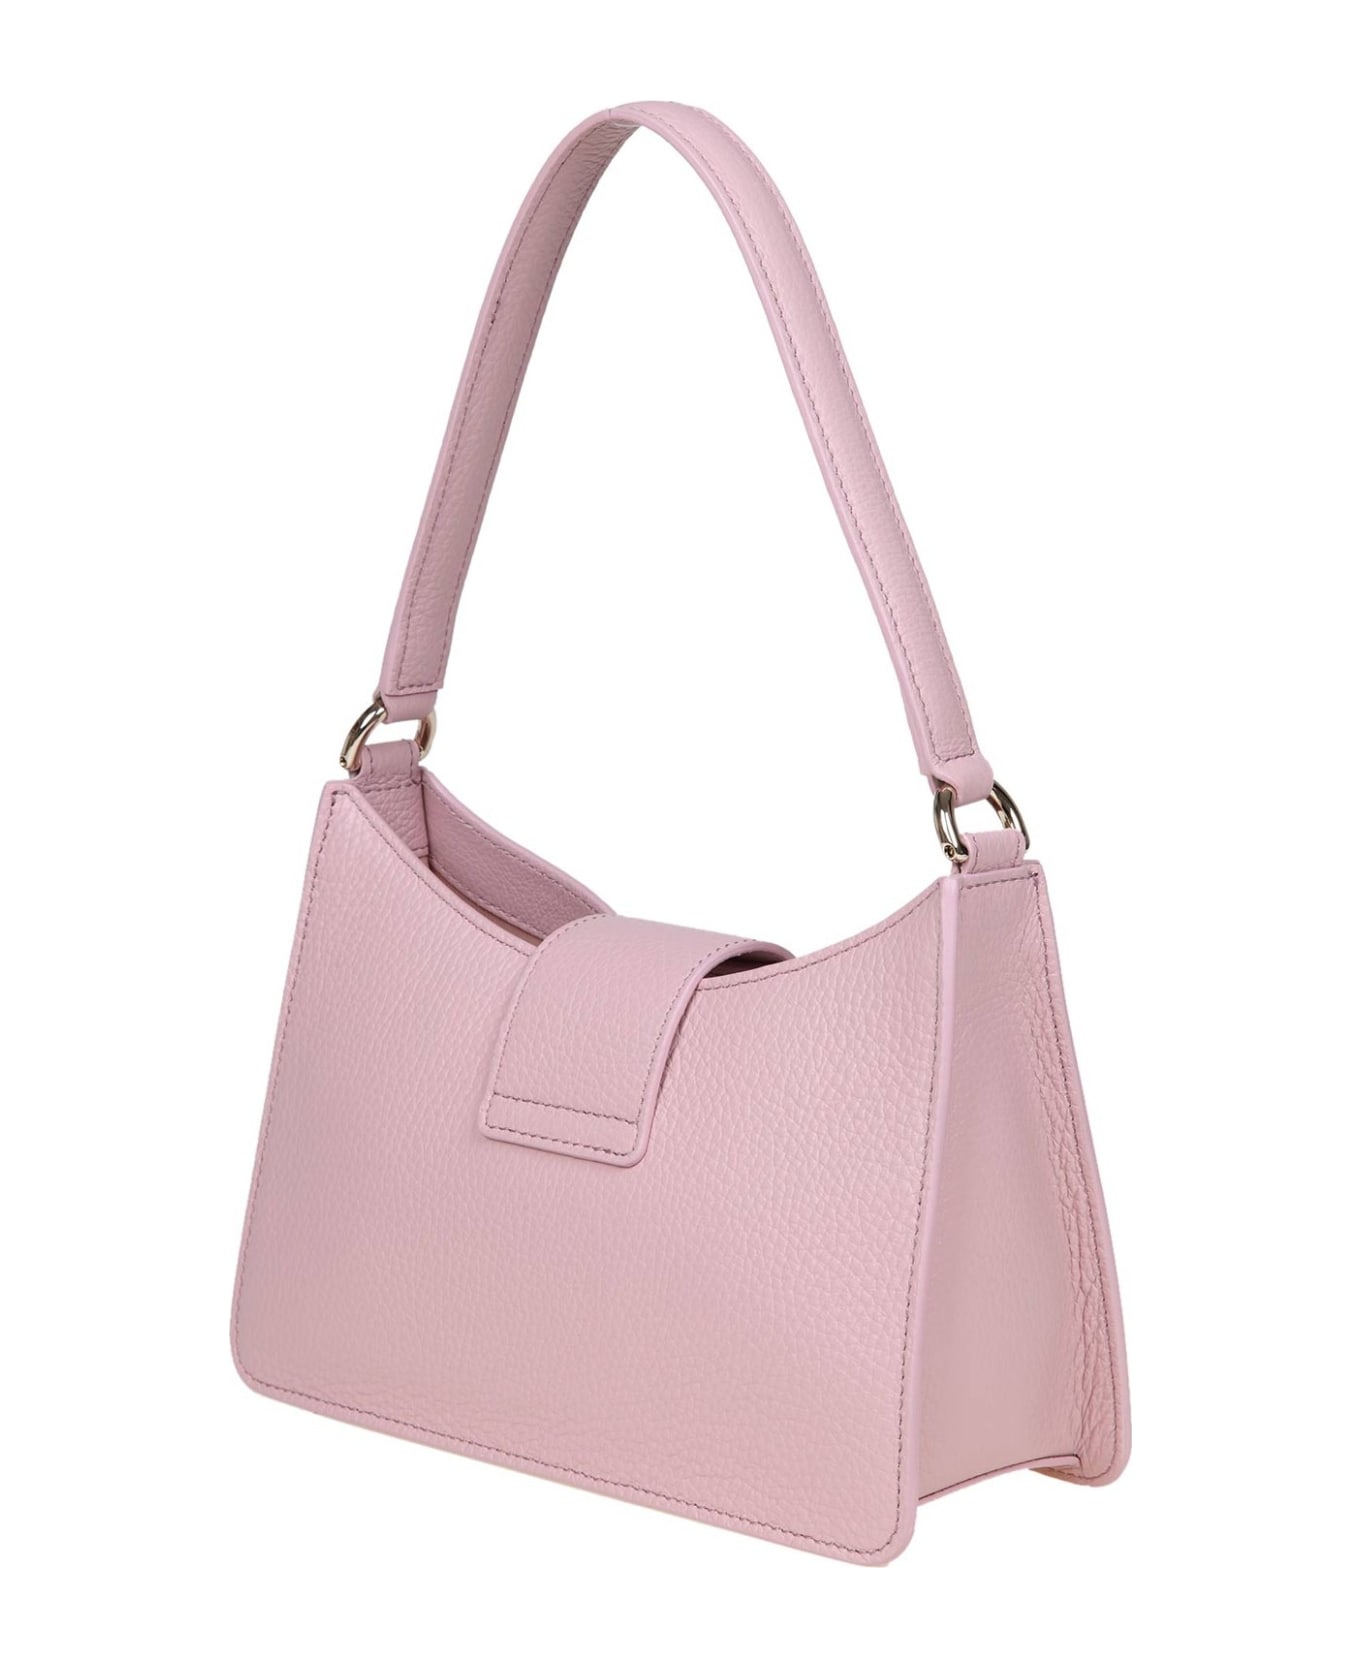 Furla 1927 S Shoulder Bag In Pink Soft Leather - Pink